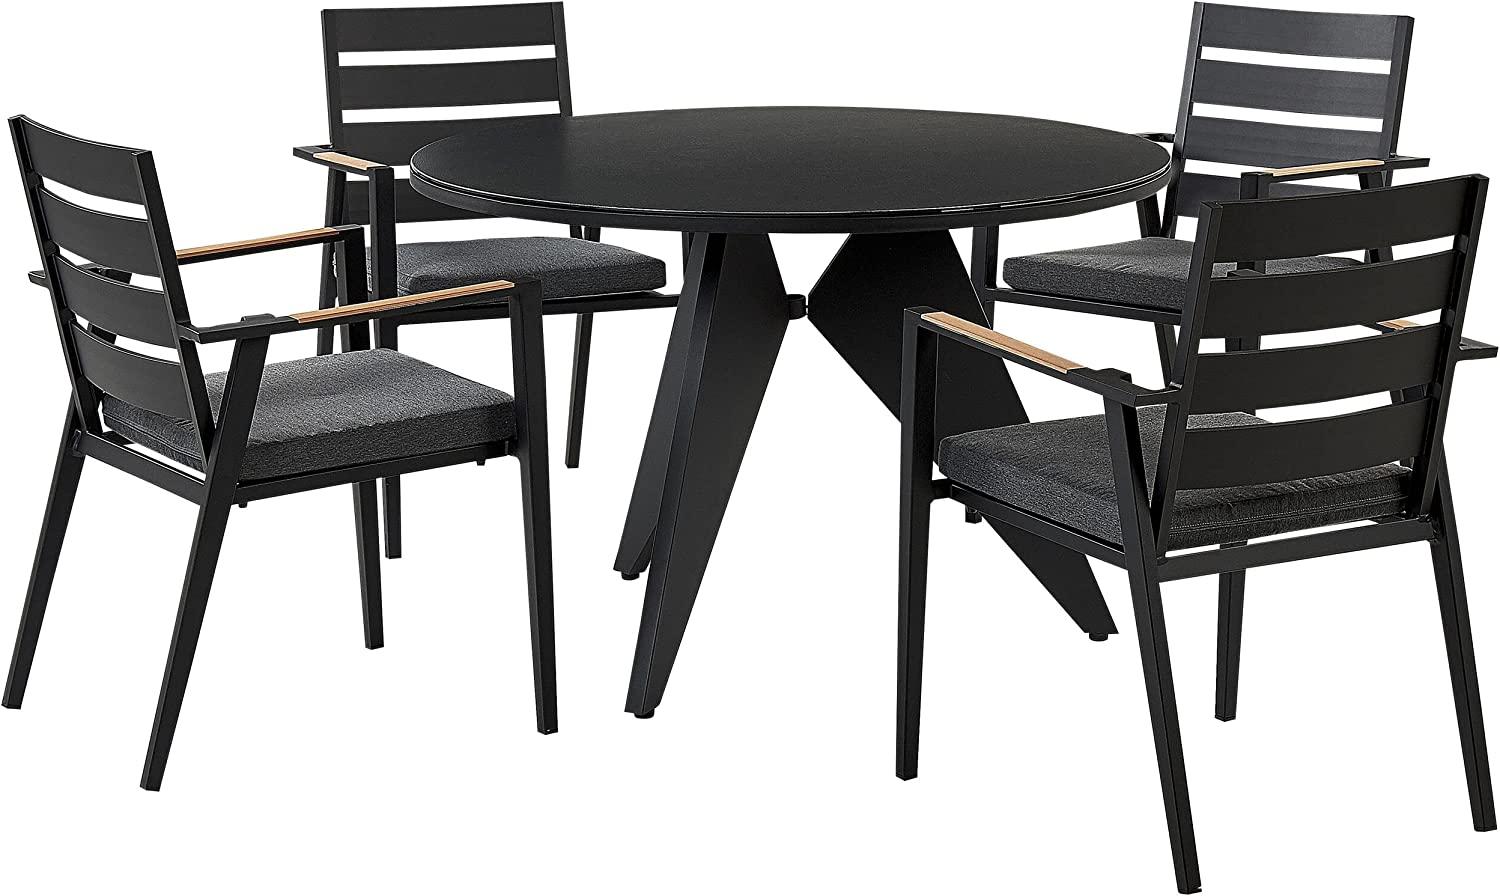 Gartenmöbel Set Aluminium schwarz 4-Sitzer Auflagen grau OLMETTO TAVIANO Bild 1